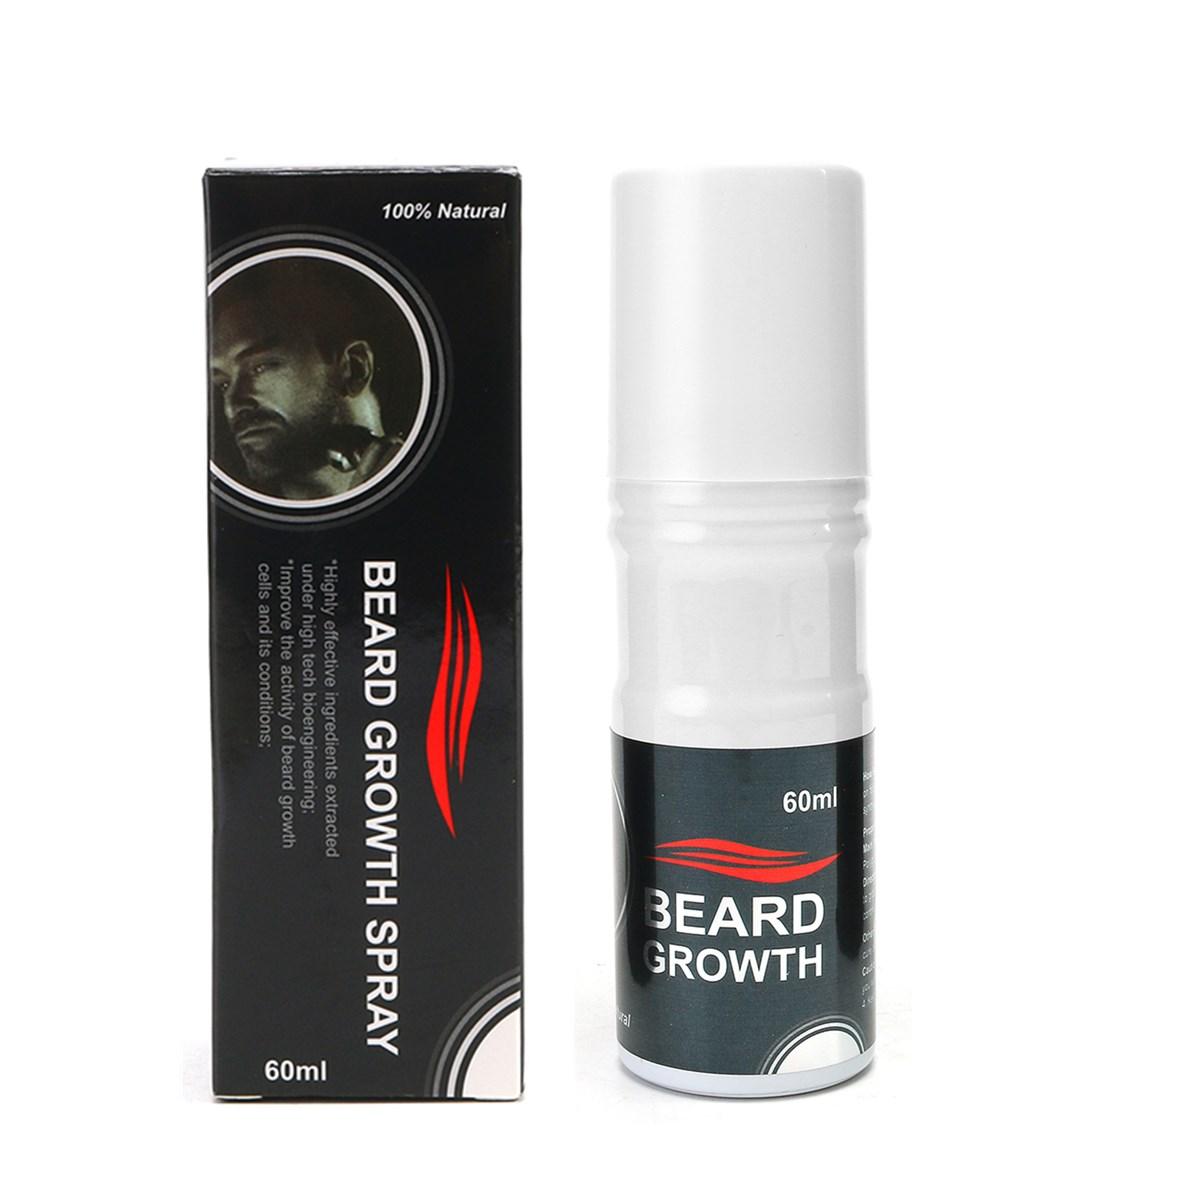 Γρήγορη ανάπτυξη γενειάδας - Beard growth spray  3x60ml (3τεμ.)